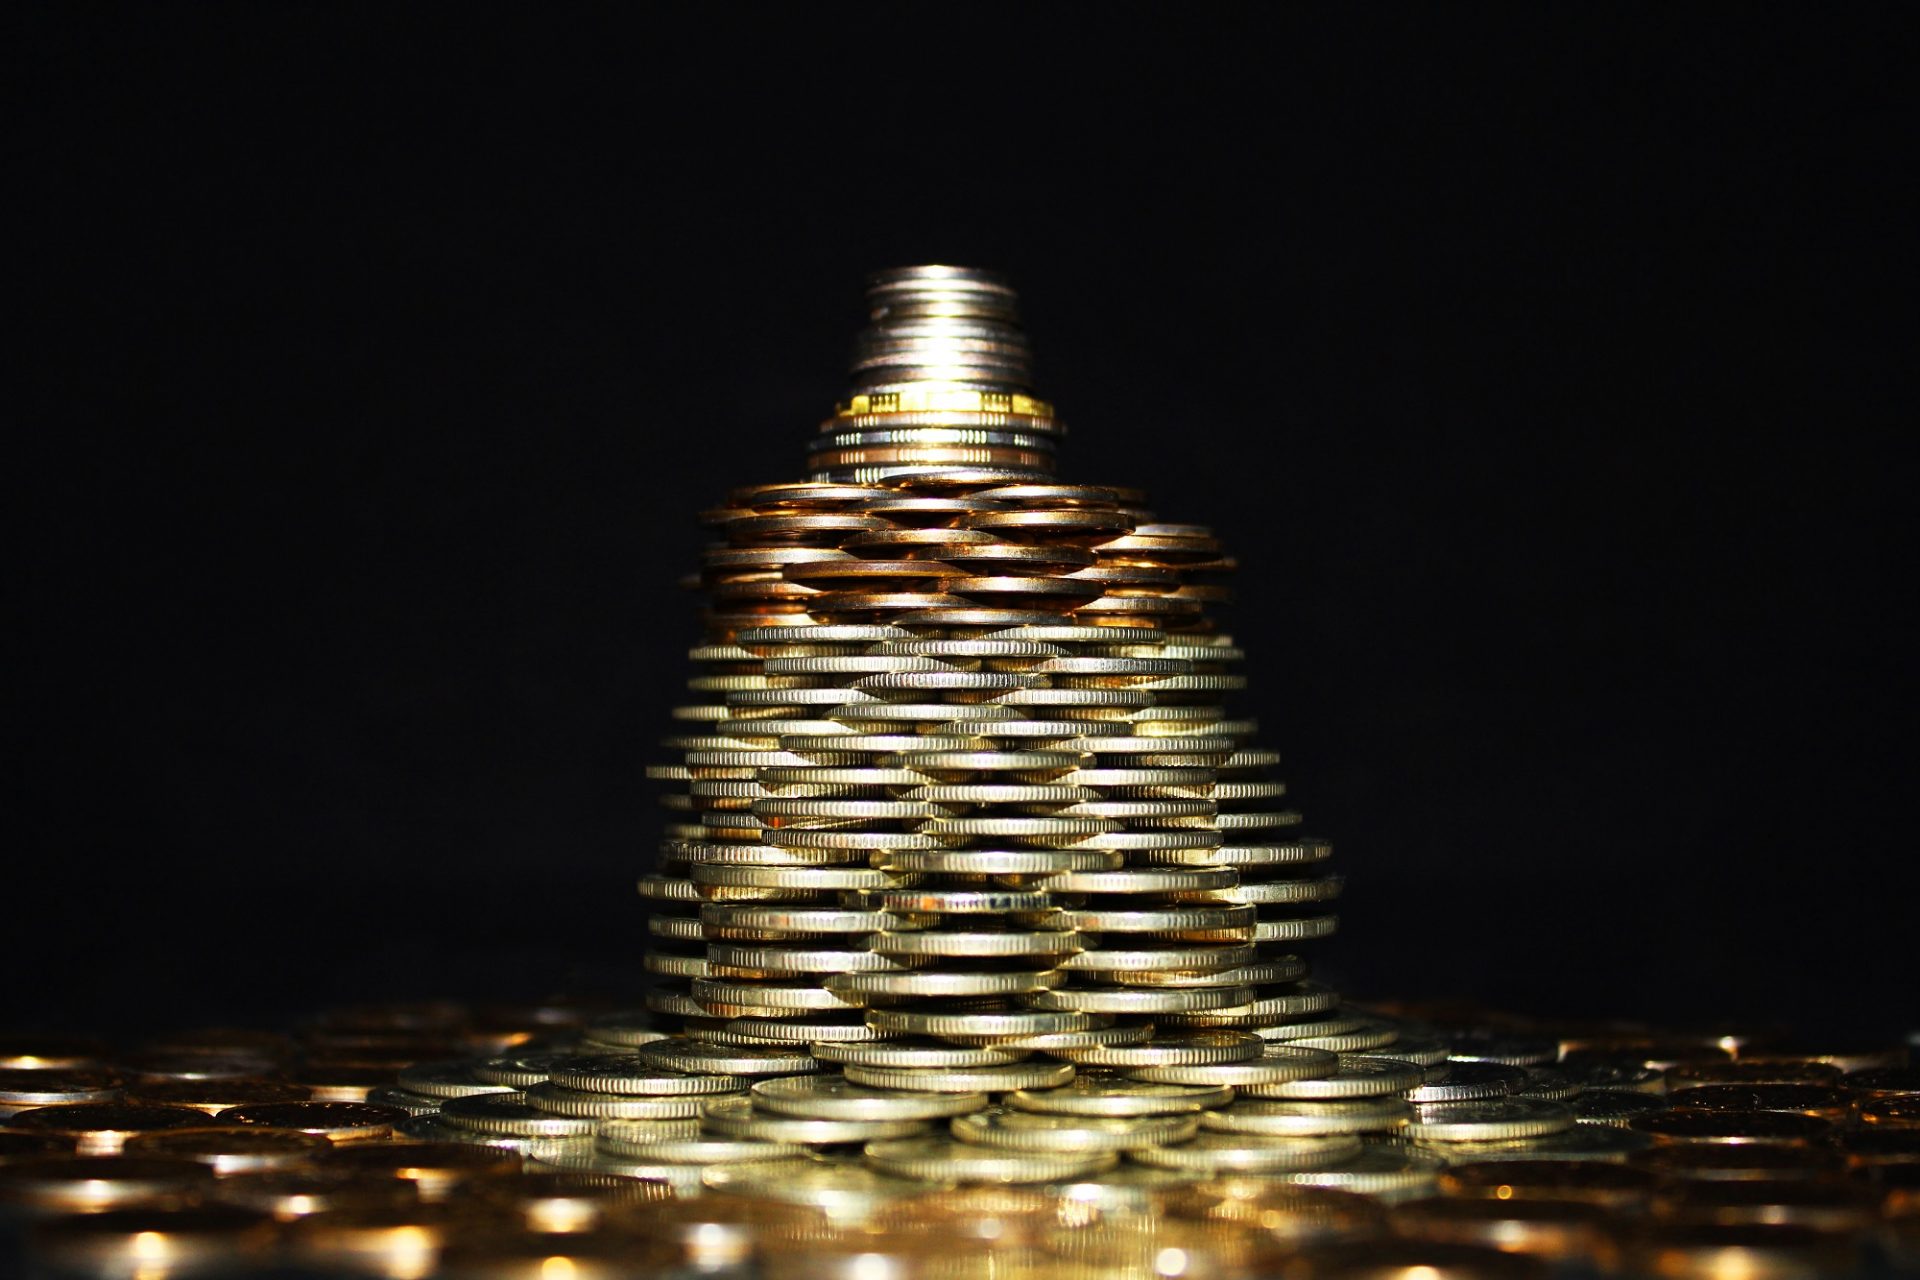 17 внешних признаков, по которым можно легко распознать финансовую пирамиду